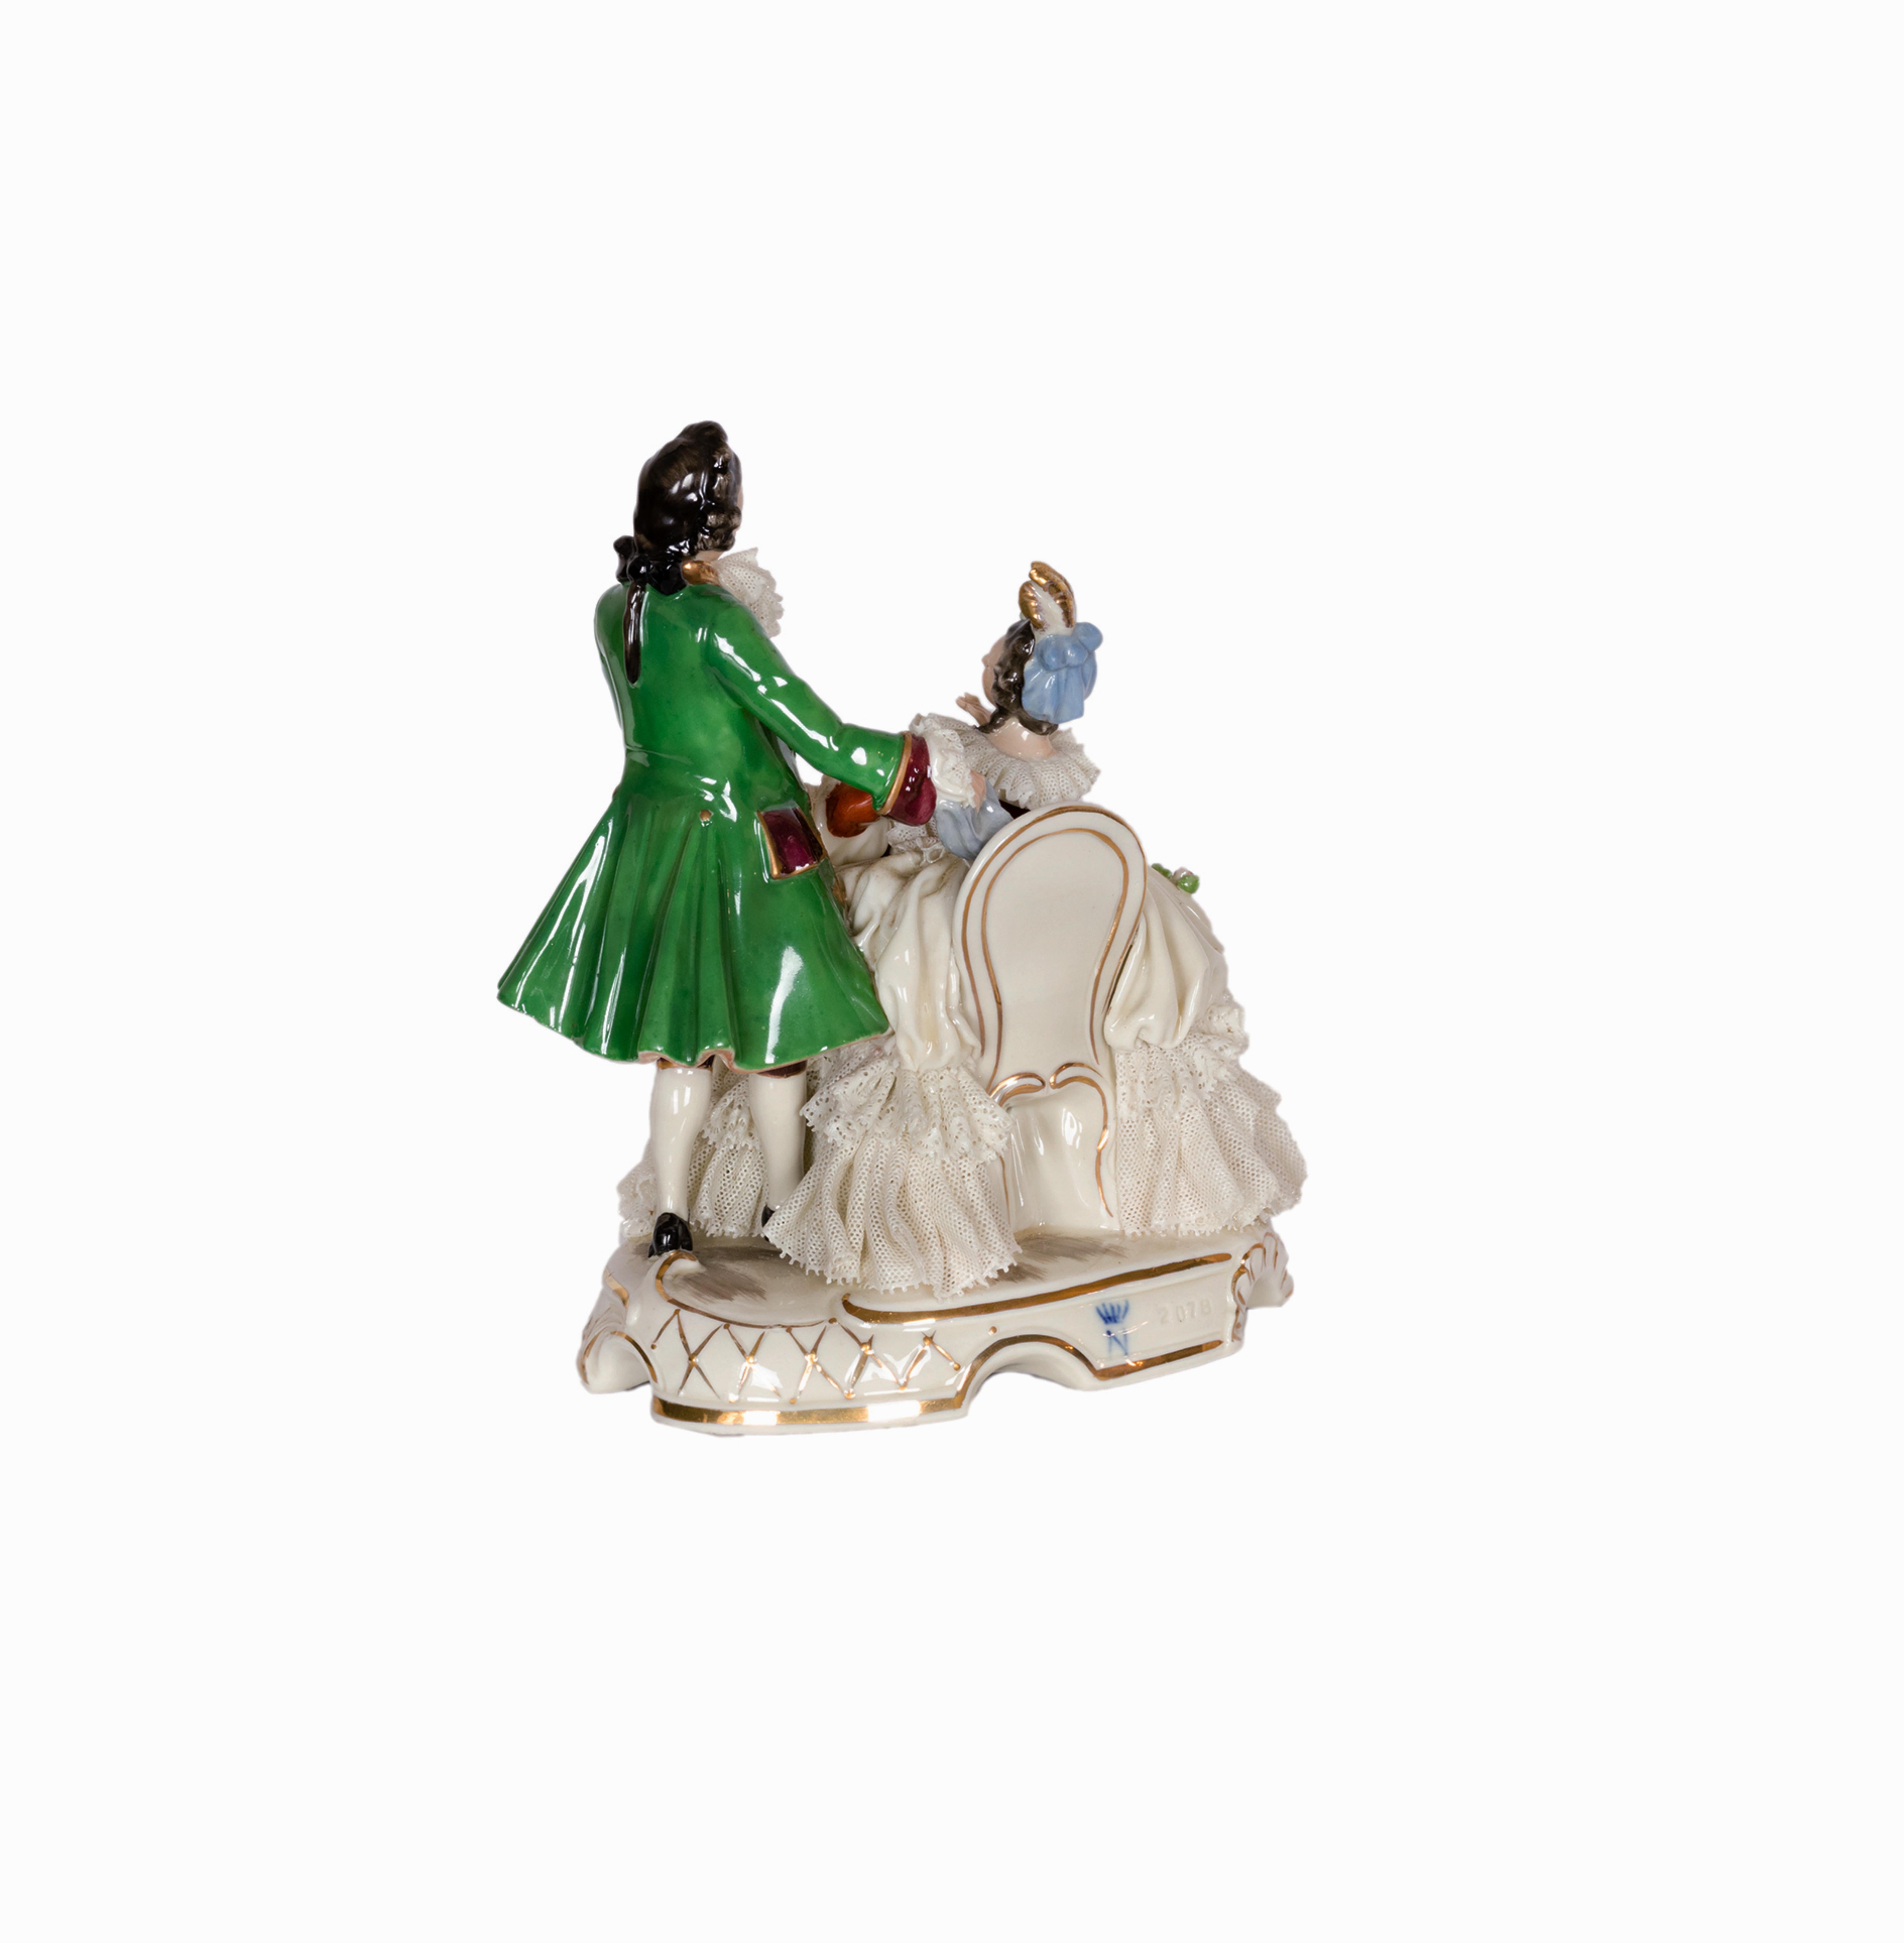 Porcelaine napolitaine de Capodimonte de style baroque représentant une scène de salon français, une femme assise dans un fauteuil jouant du luth et un admirateur essayant de l'impressionner, marquée 'N' et '2078' dans la base, comme vous pouvez le